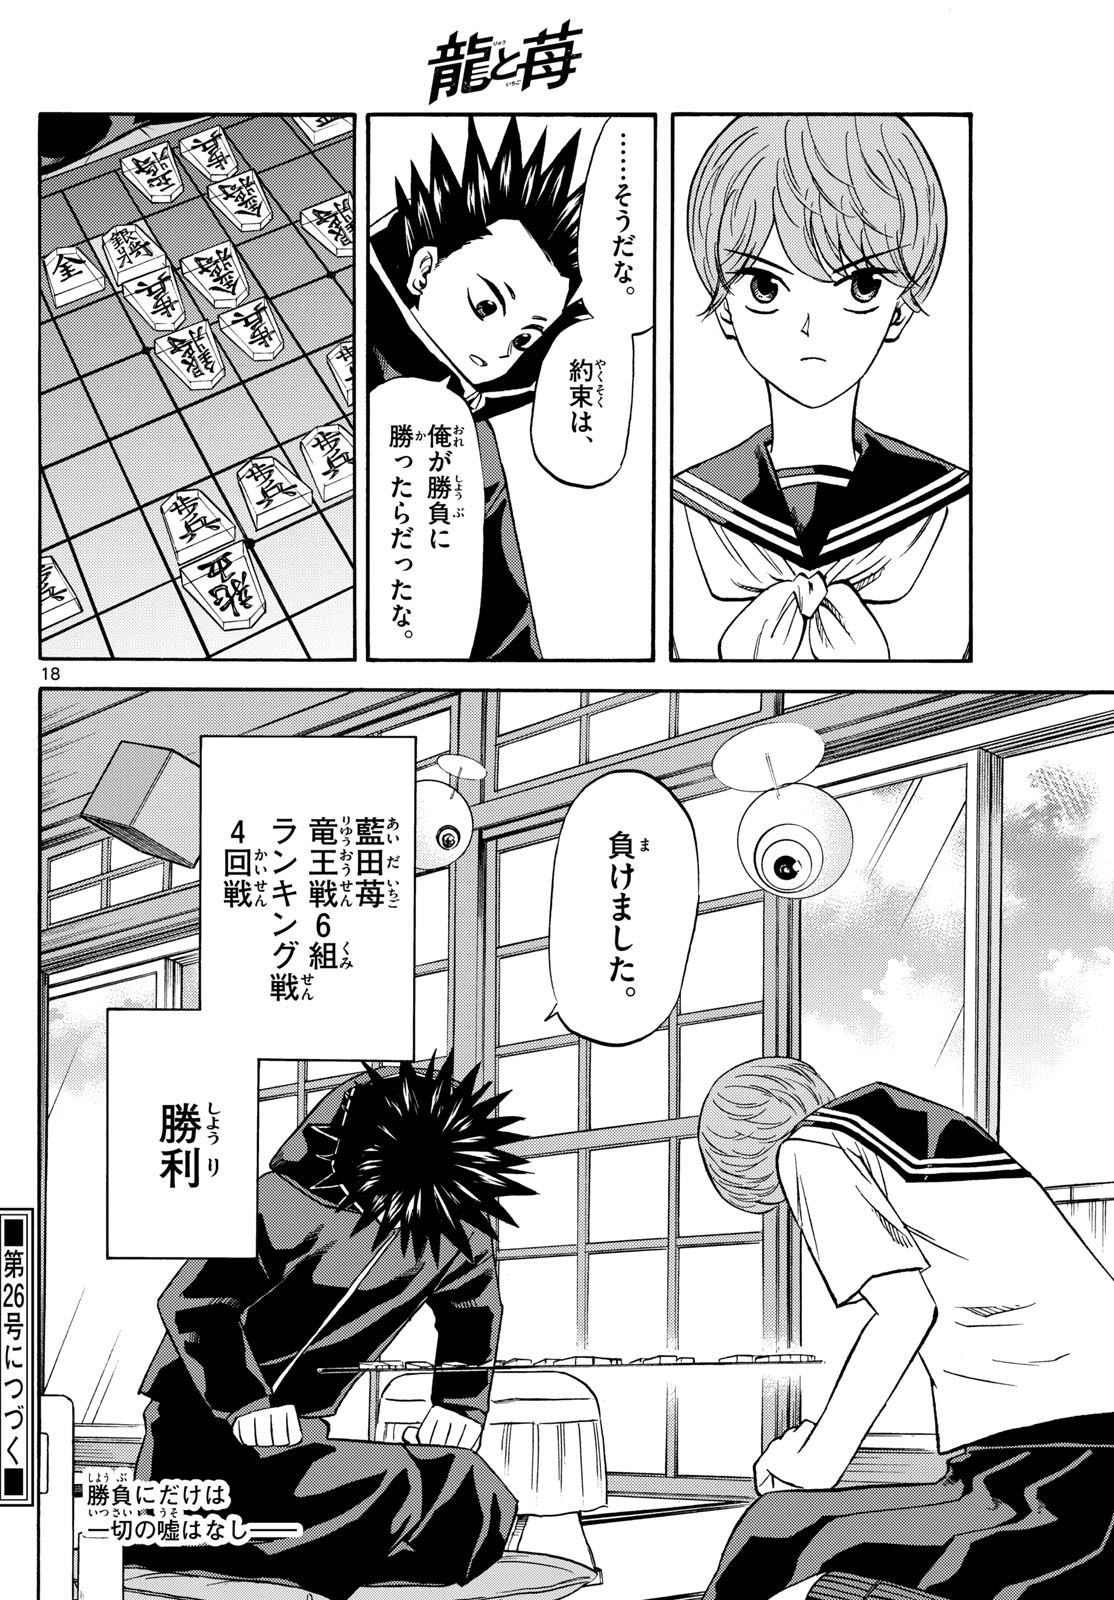 Tatsu to Ichigo - Chapter 191 - Page 18